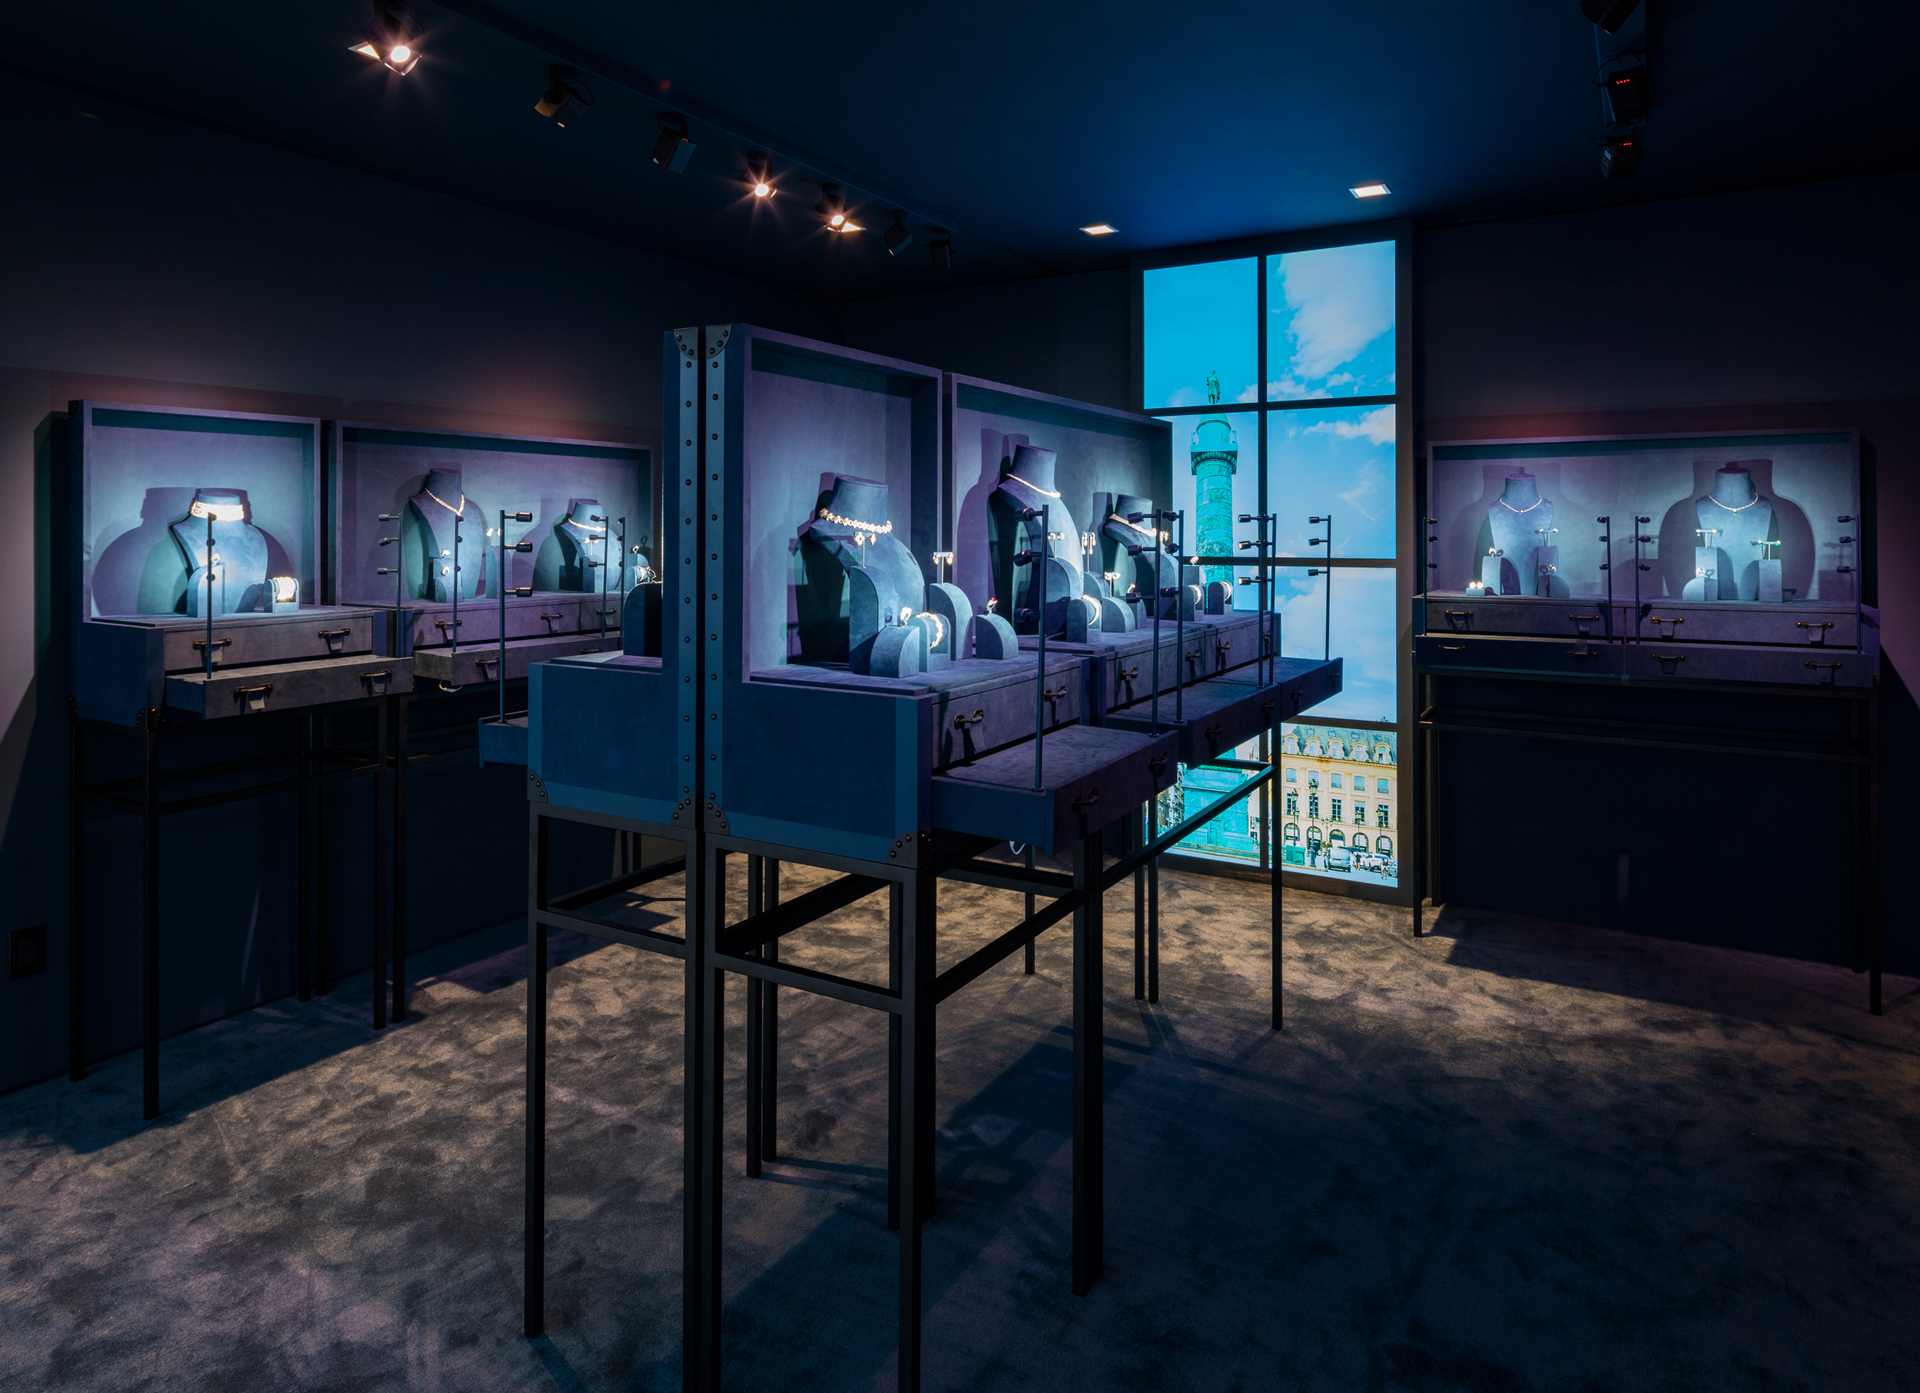 The Louis Vuitton Savoir Faire Universe is a showcase of craftsmanship